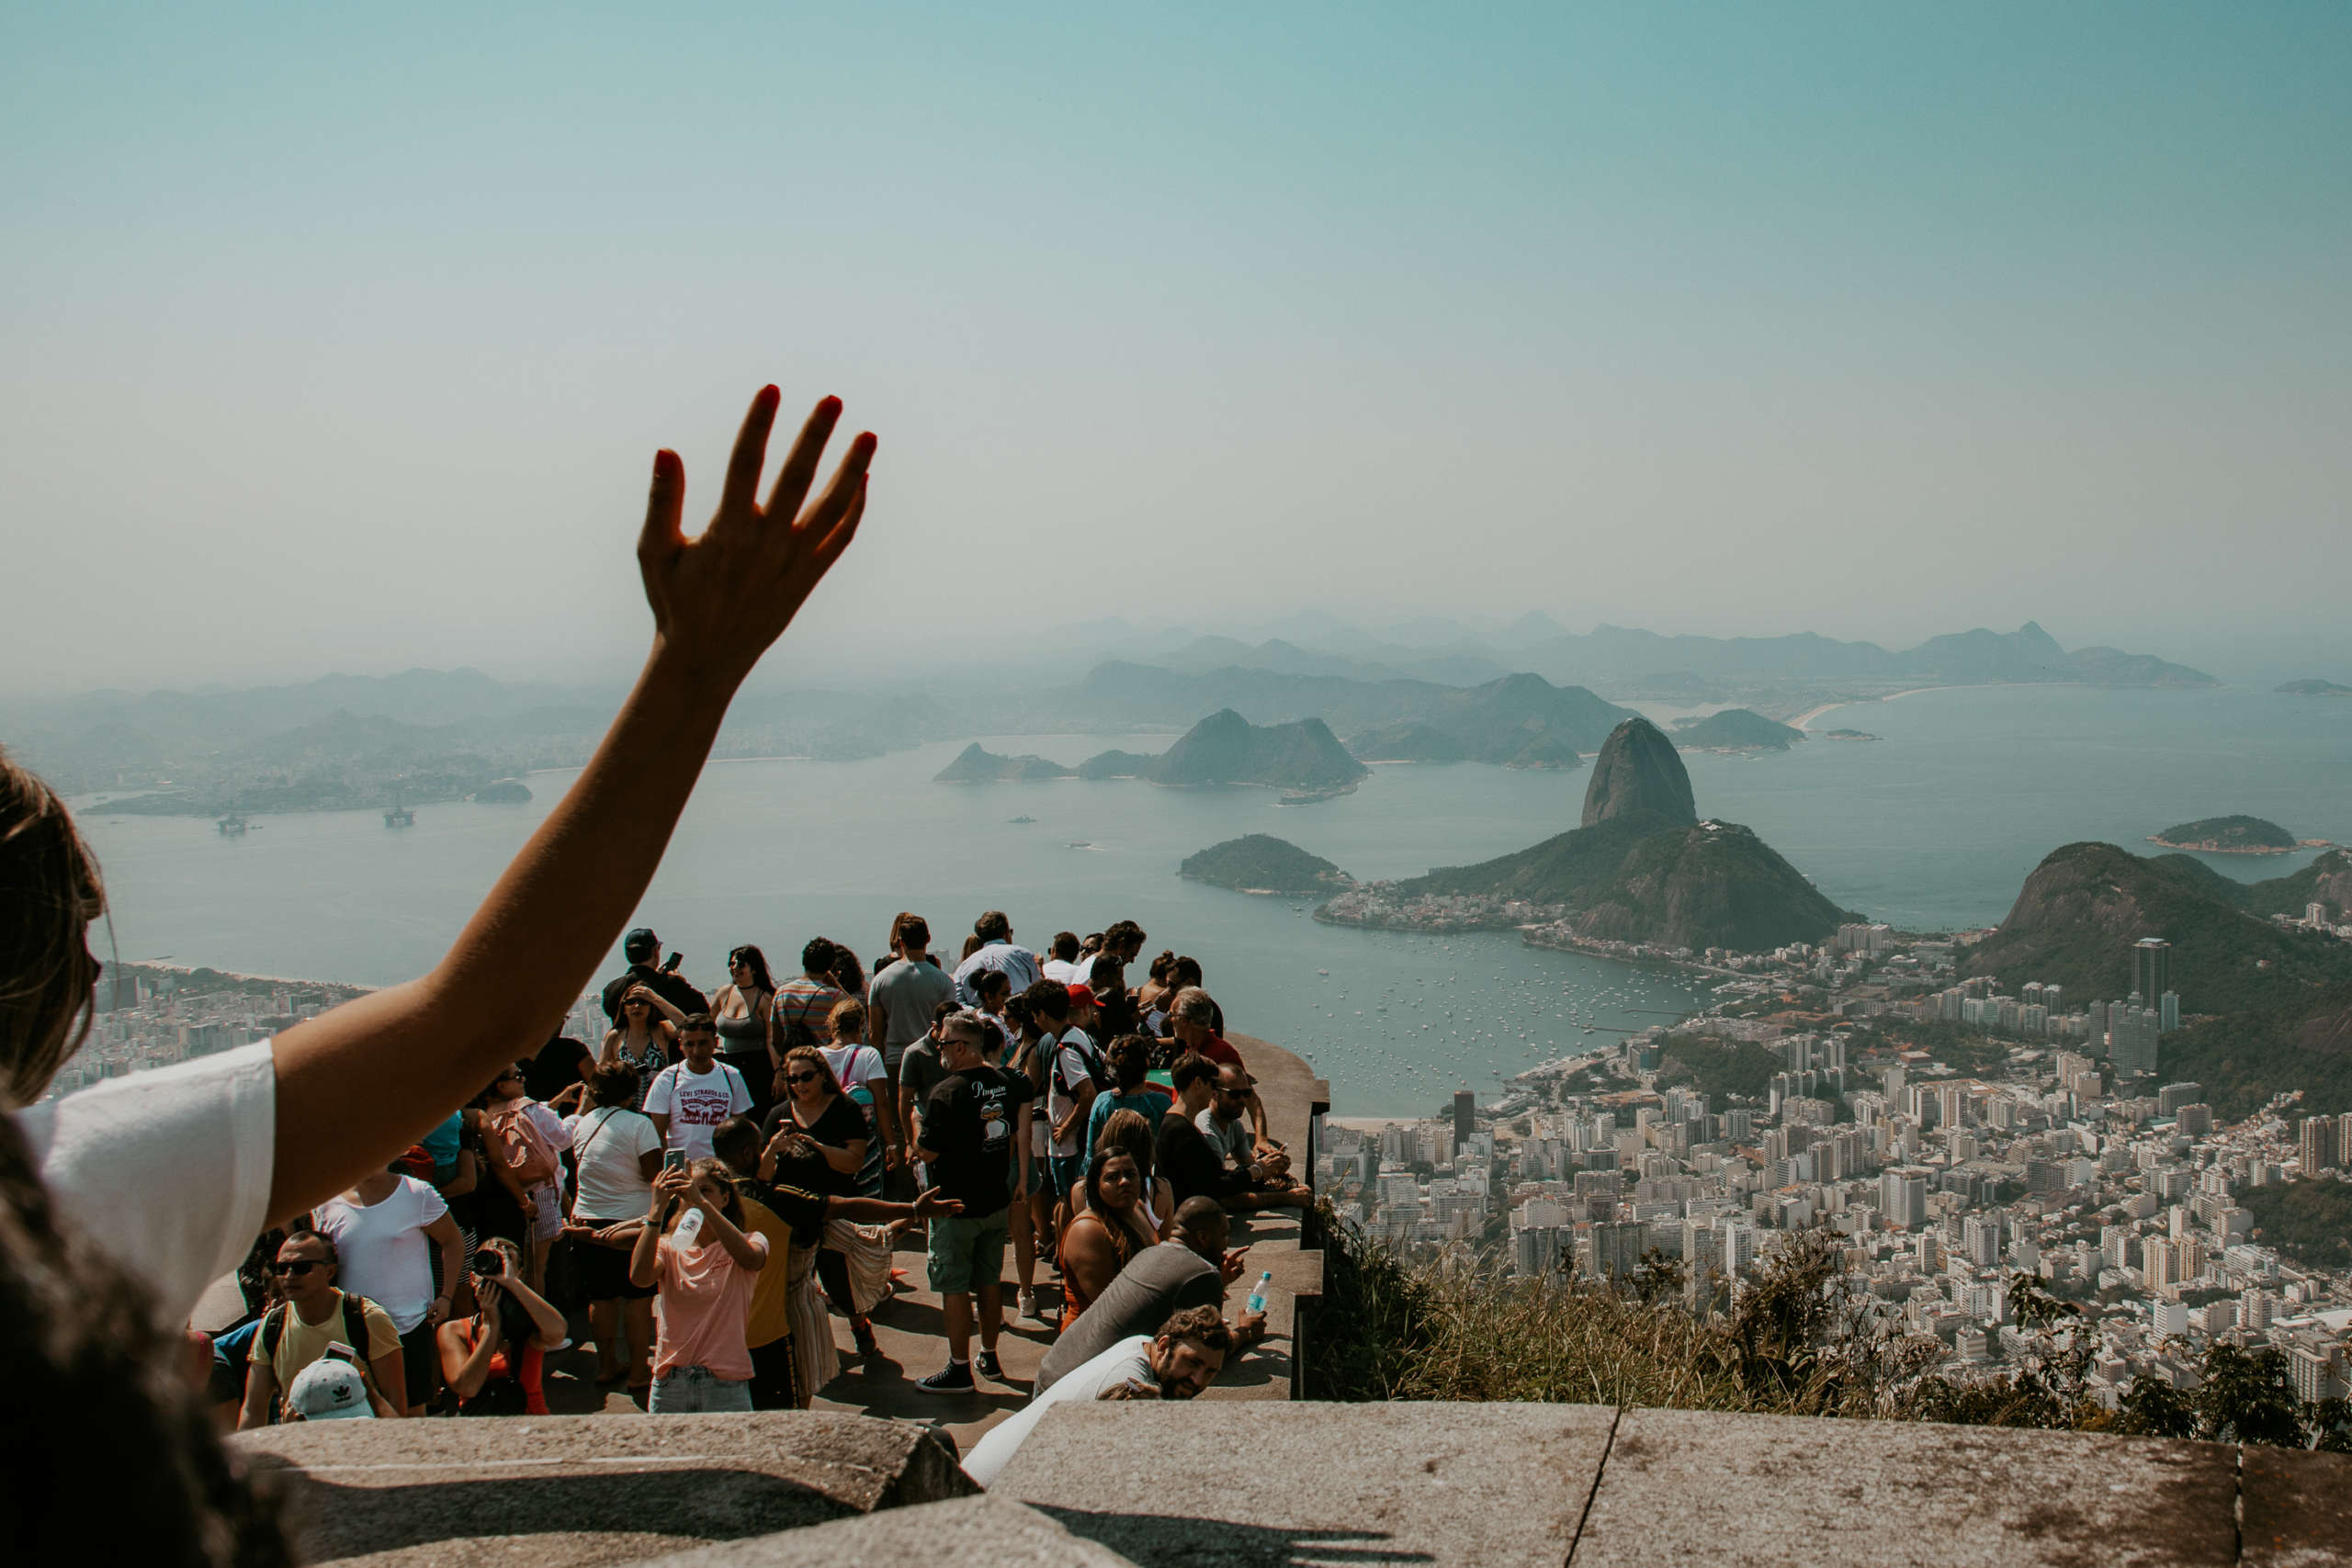 Von der Aussichtsplattform in Corcovado sieht man direkt auf den Pao de Açucar, den Zuckerhut: kein Geheimtipp mehr, aber ein Must See in Rio de Janeiro.